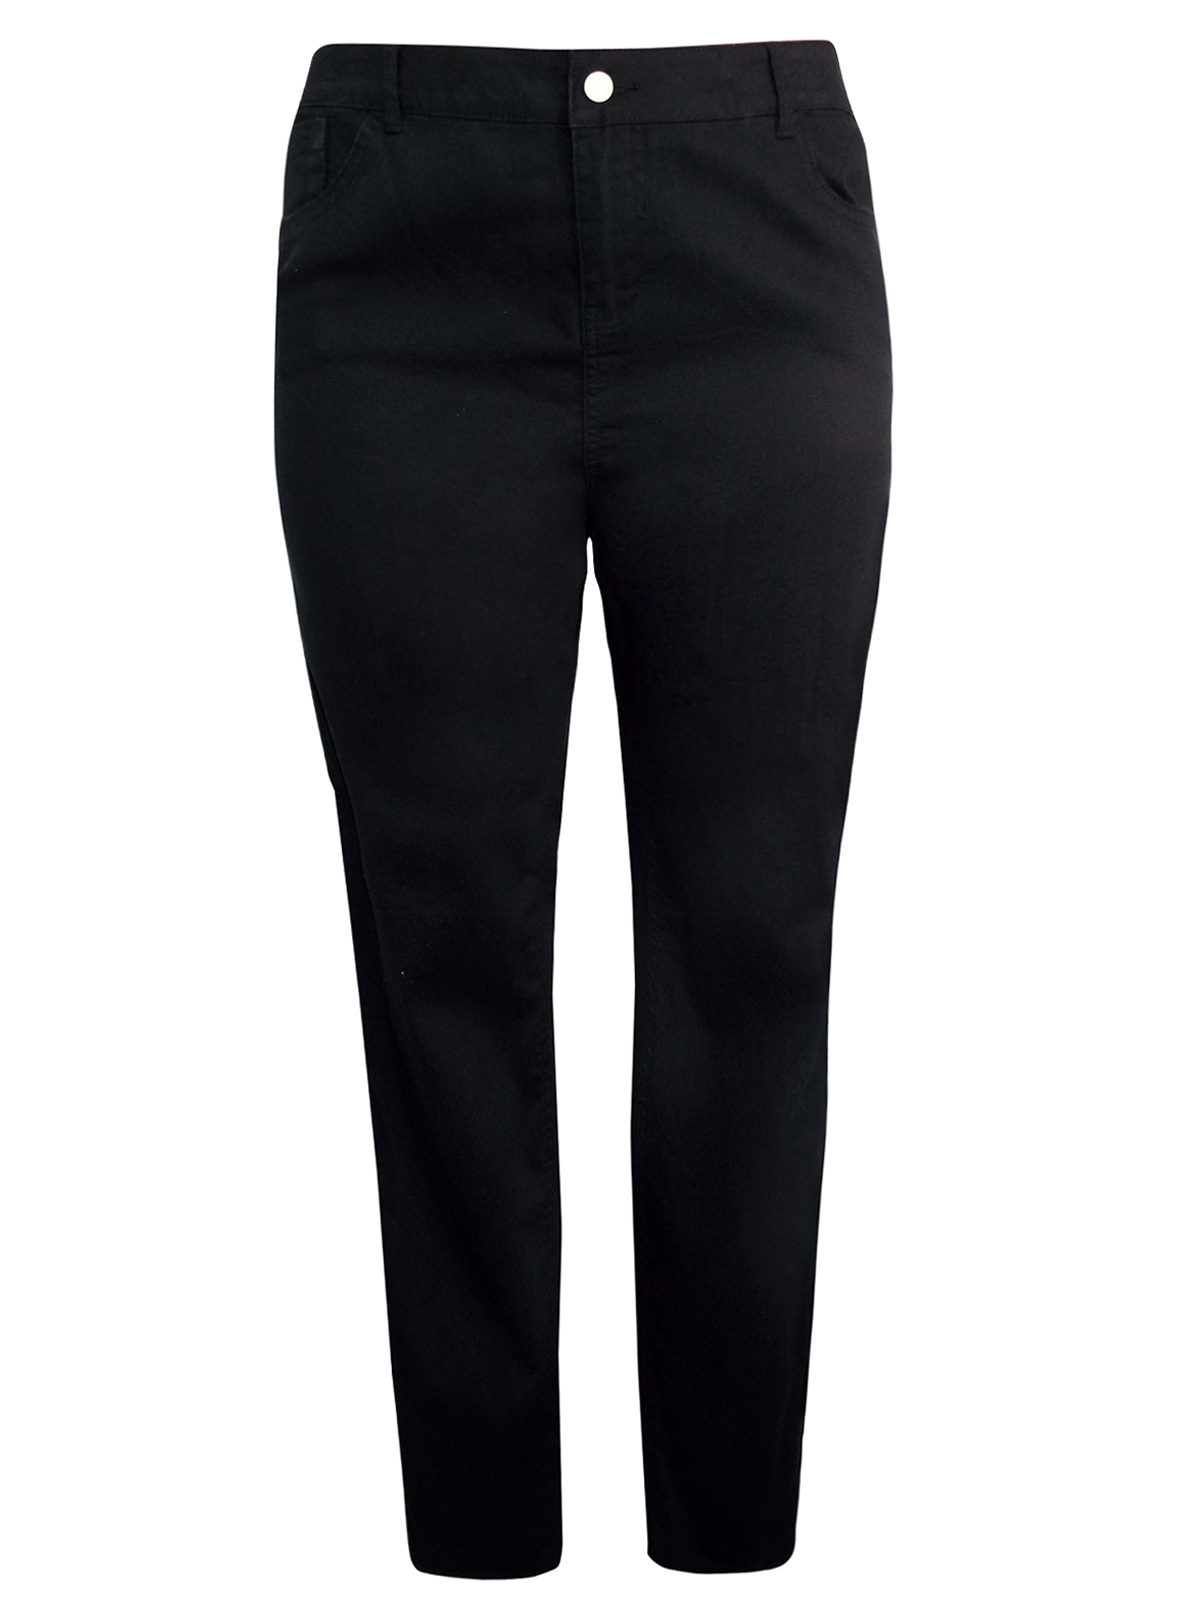 N3w L00k BLACK Super Skinny Denim Jeans - Plus Size 18 to 22